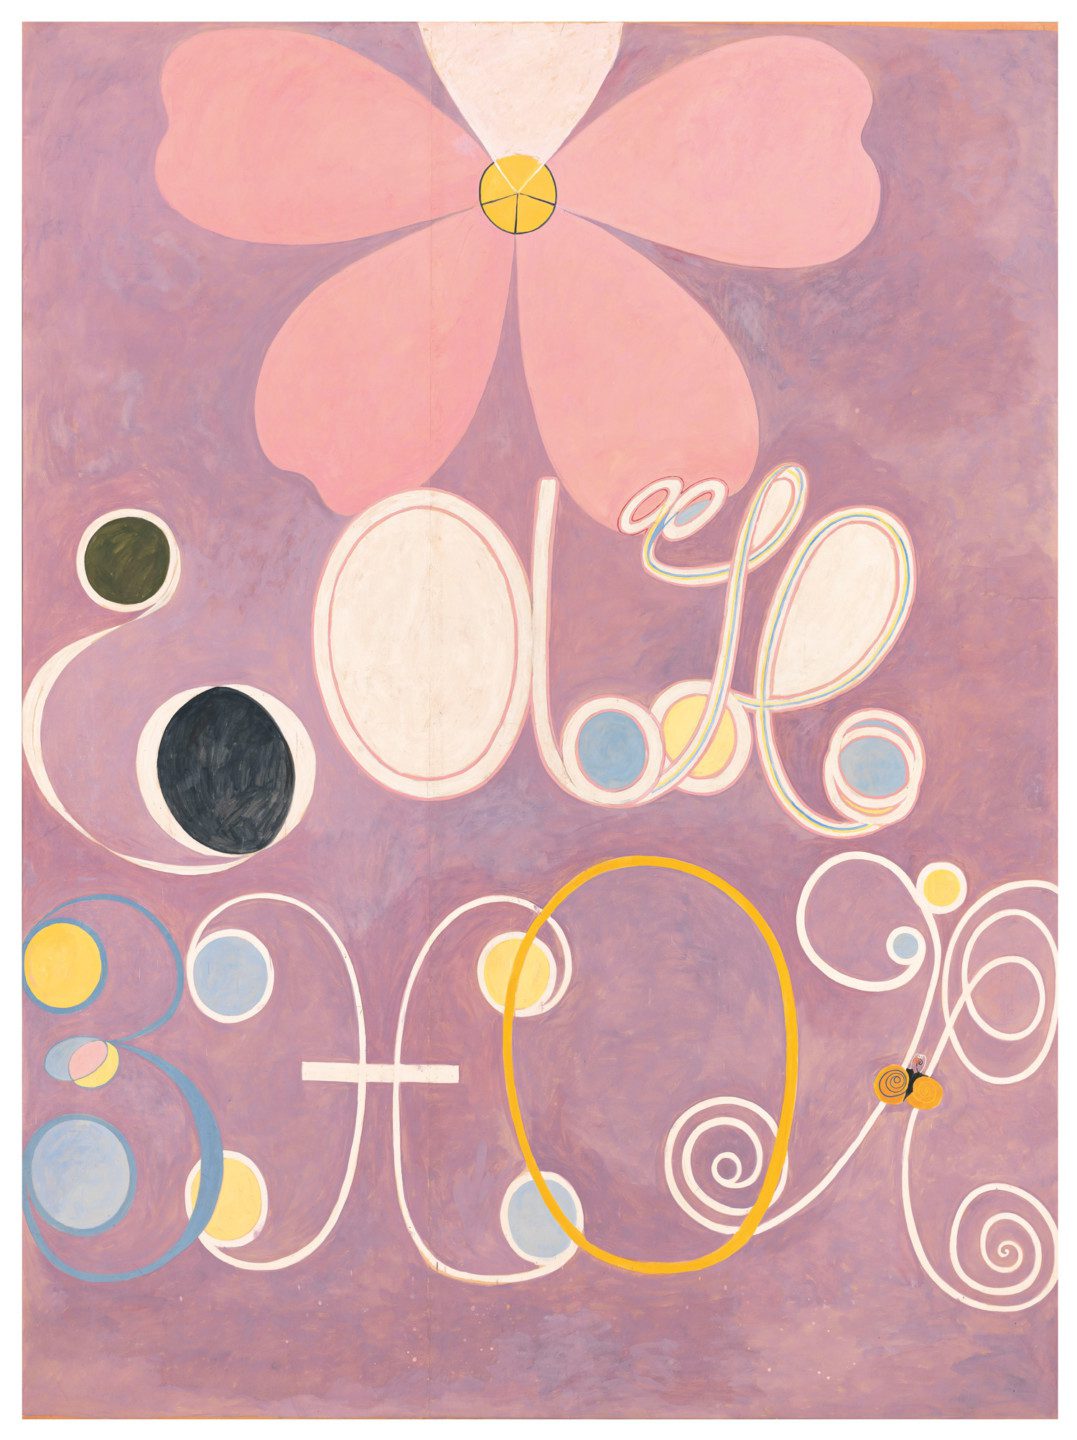 Mönster i vitt, blått, gult och rosa mot lila bakgrund